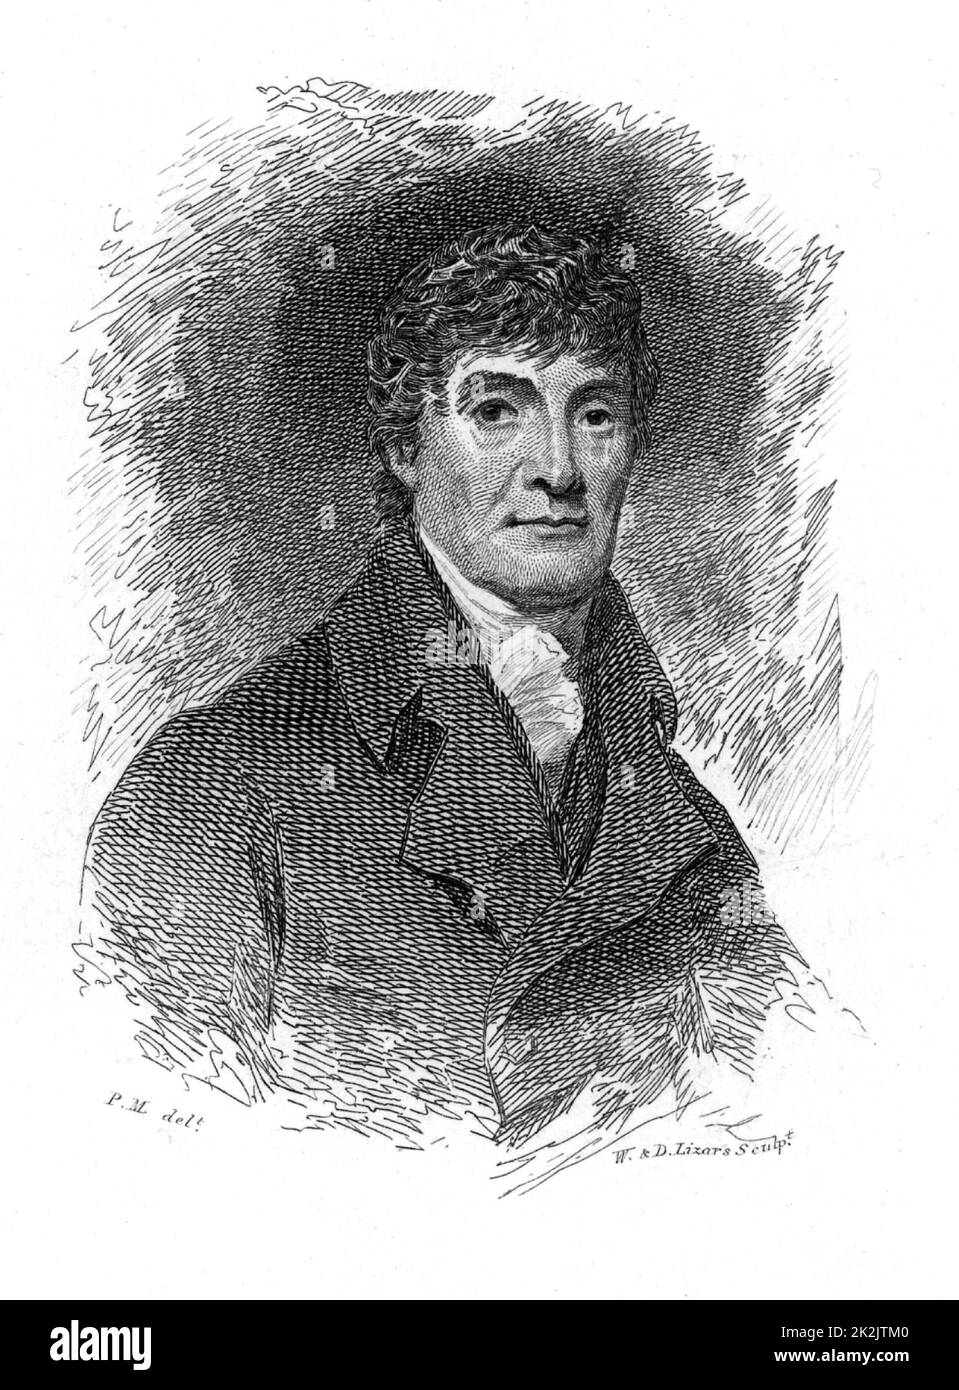 Henry Mackenzie (1745-1831) romancier, dramaturge, poète, rédacteur et écrivain écossais, né à Édimbourg. Gravure de 'Peter's Letters to HIS Kinsfolk' par Peter Morris (Édimbourg, 1819). Banque D'Images